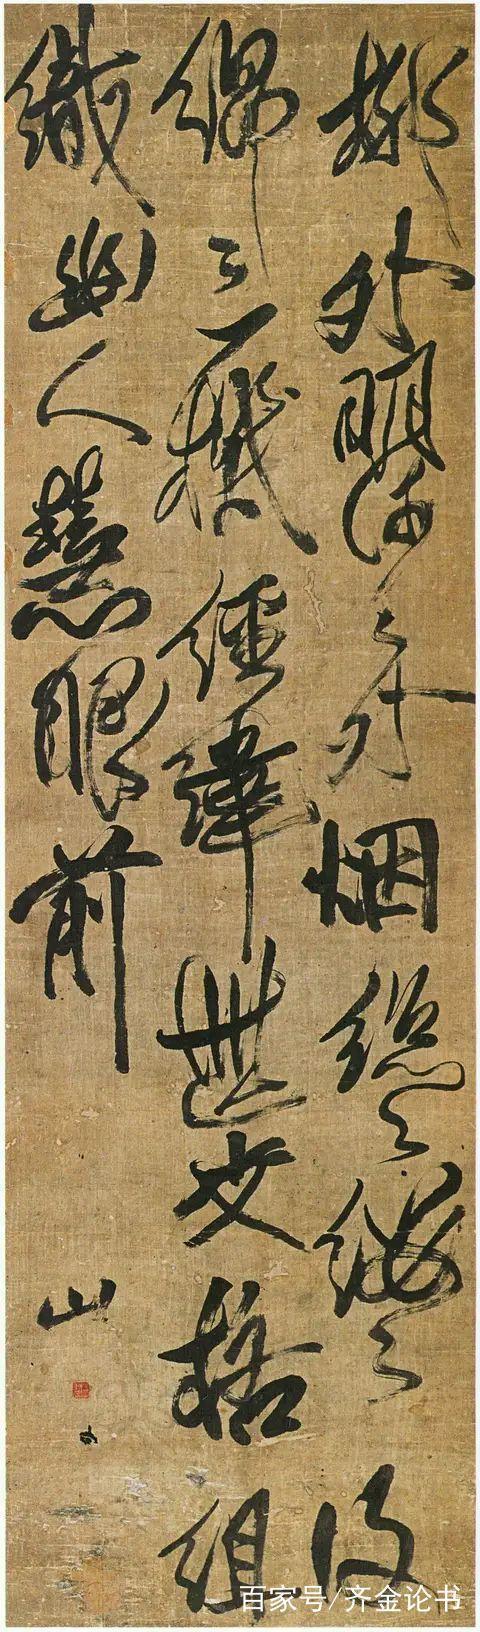 清朝中后期都有哪些有代表性的书法大家?